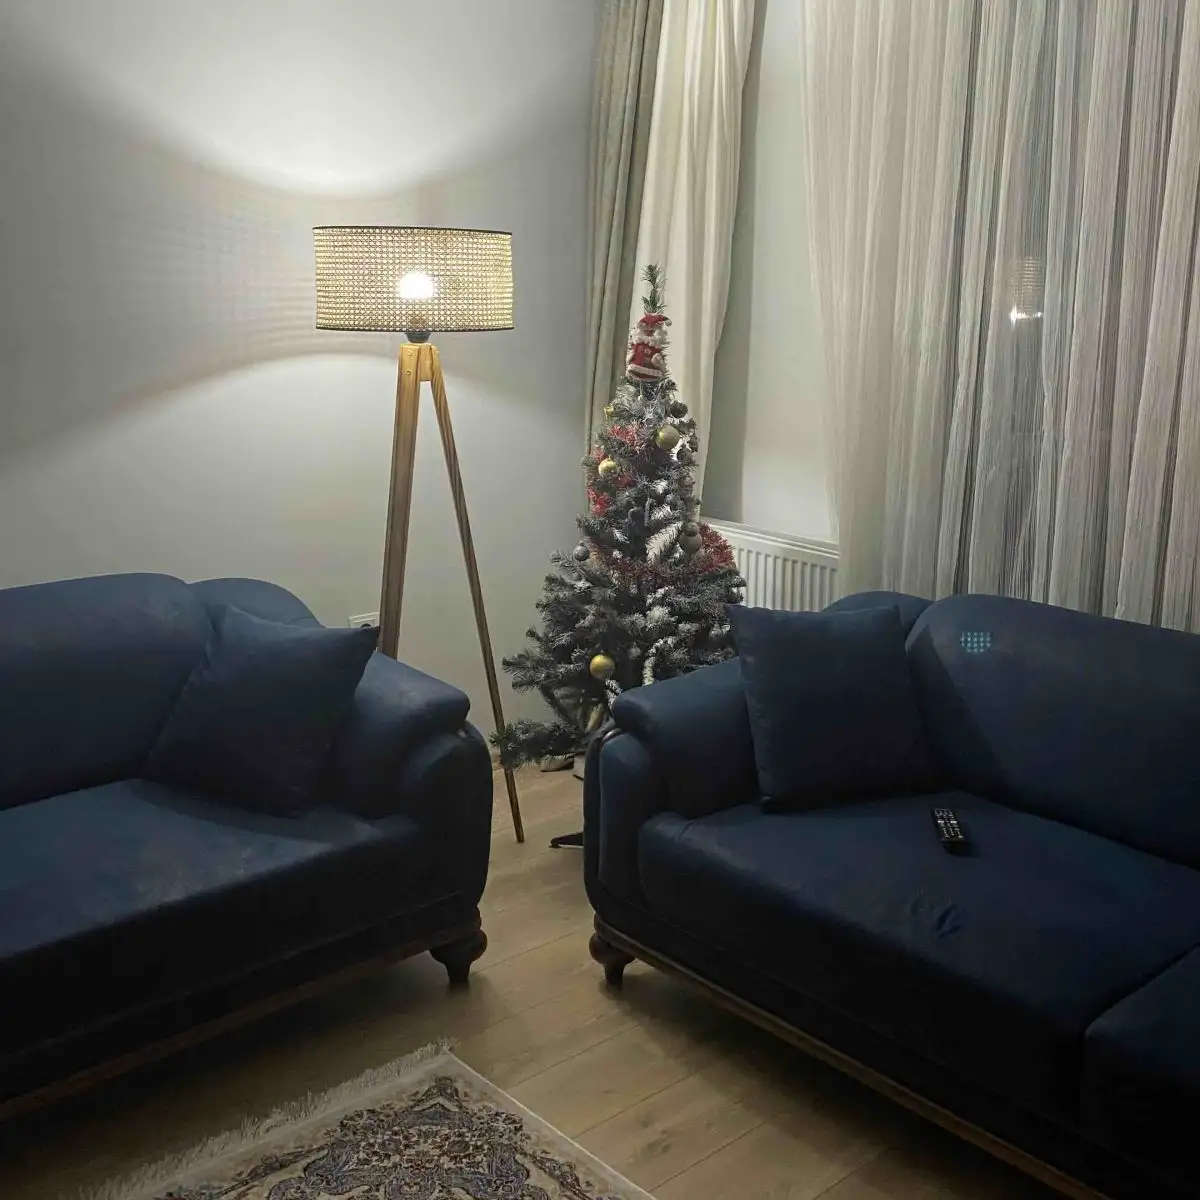 Lampadar corp lemn  textil,nuc- bej, Homs, 153 cm,40006